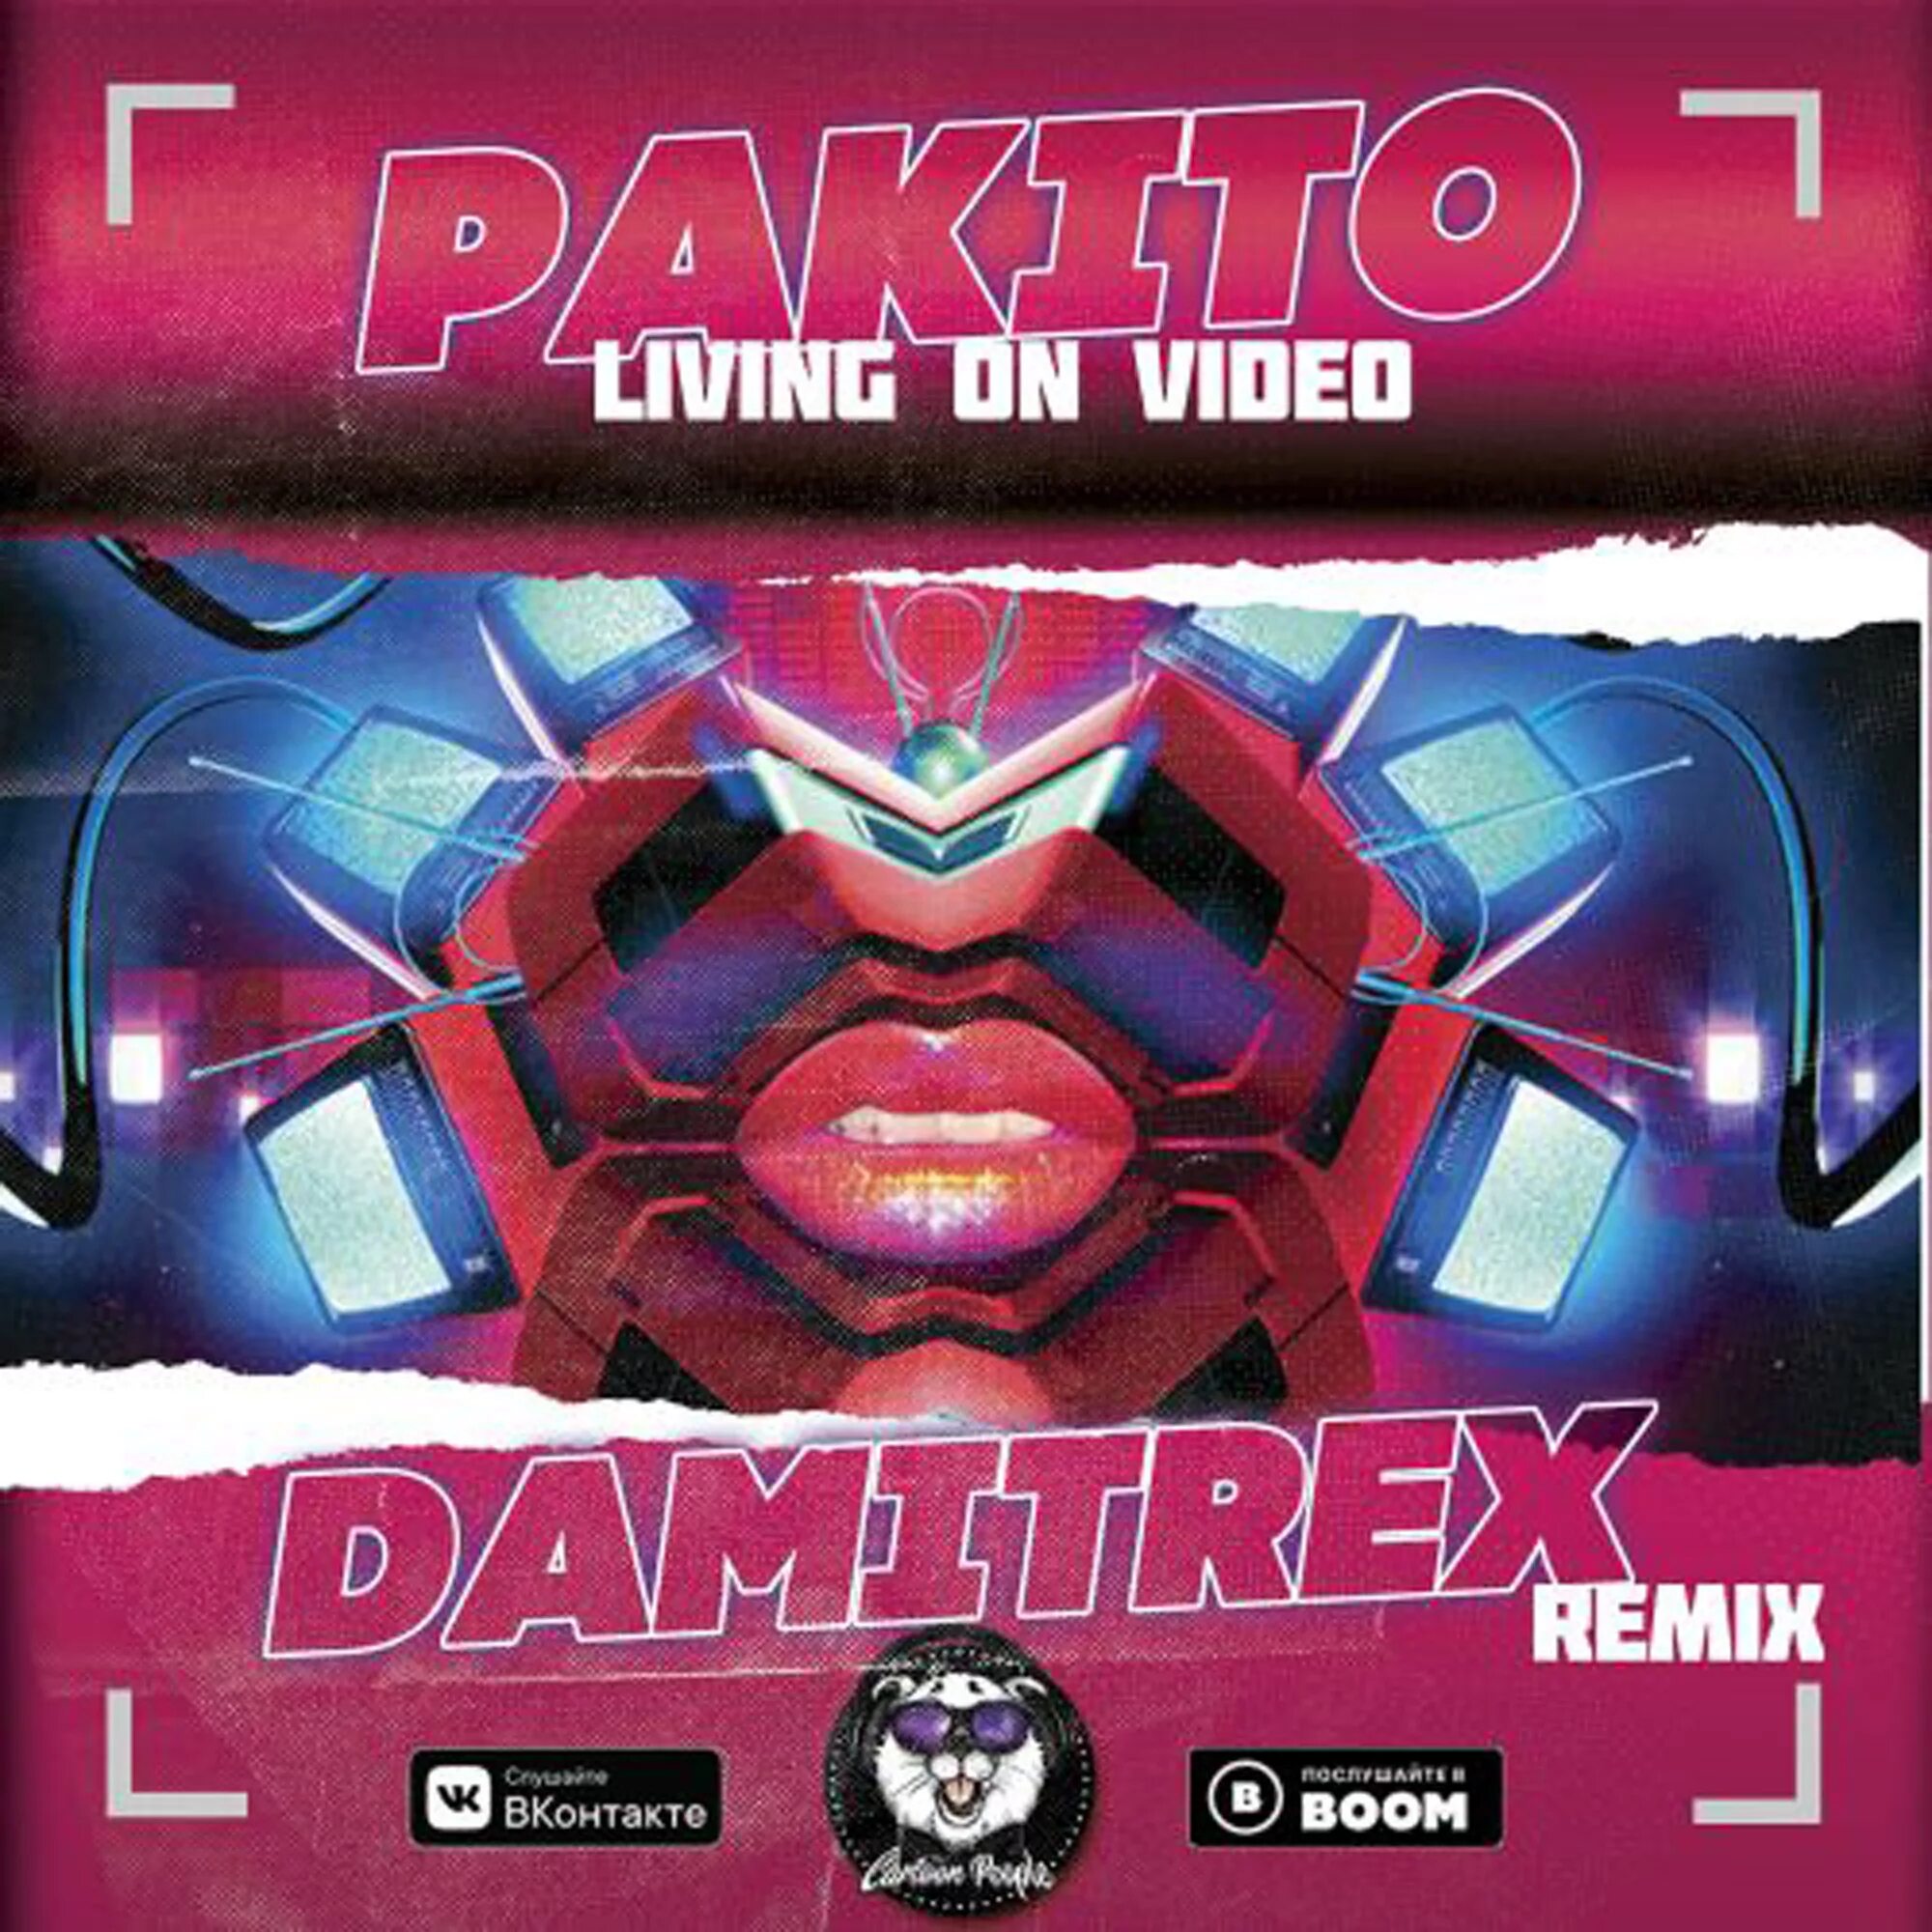 Пакито ремикс. Pakito Living. Pakito Living on Video. Pakito Living on Video Remix. Пакито Ливинг он видео.